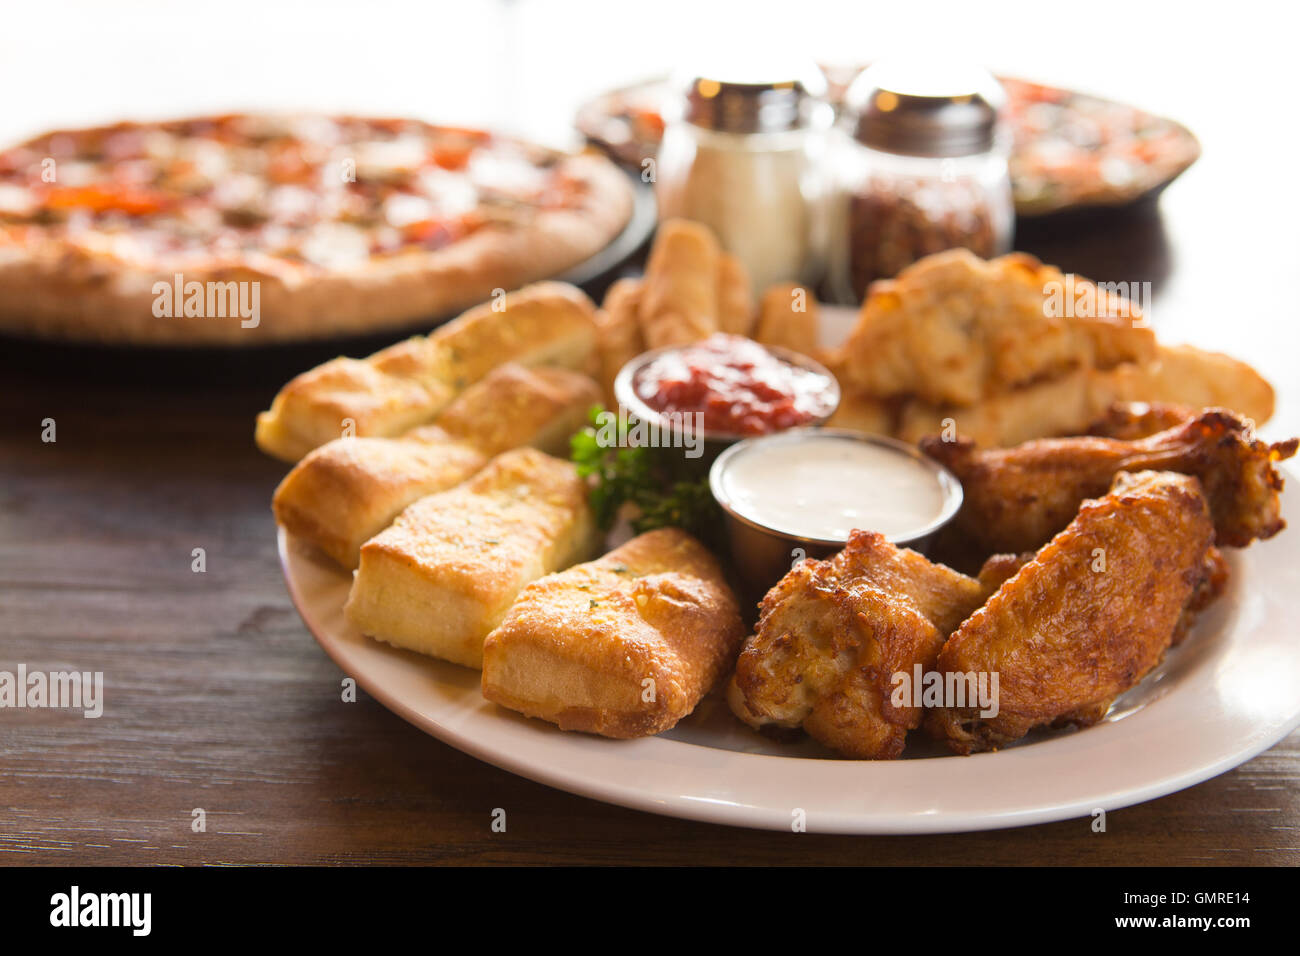 Piatto di antipasti tra cui ali di pollo, grissini e ranch dressing, con pizza in background Foto Stock